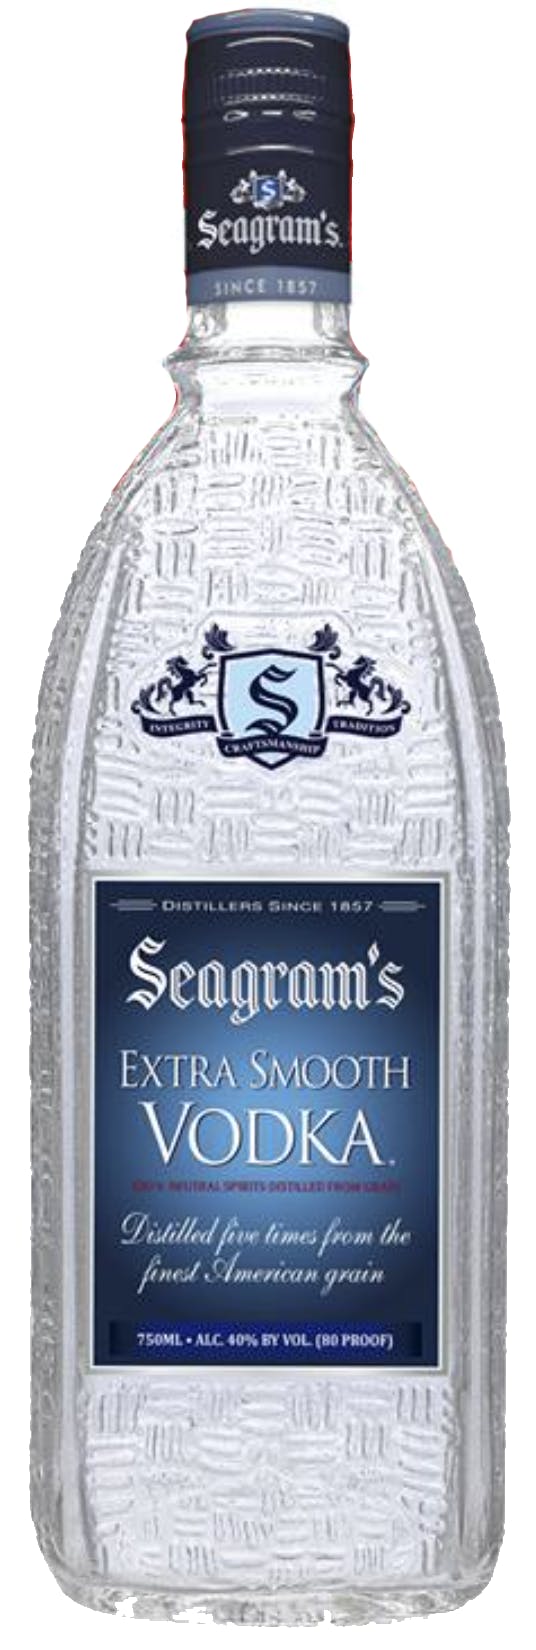 Seagram's - Argonaut Wine & Liquor